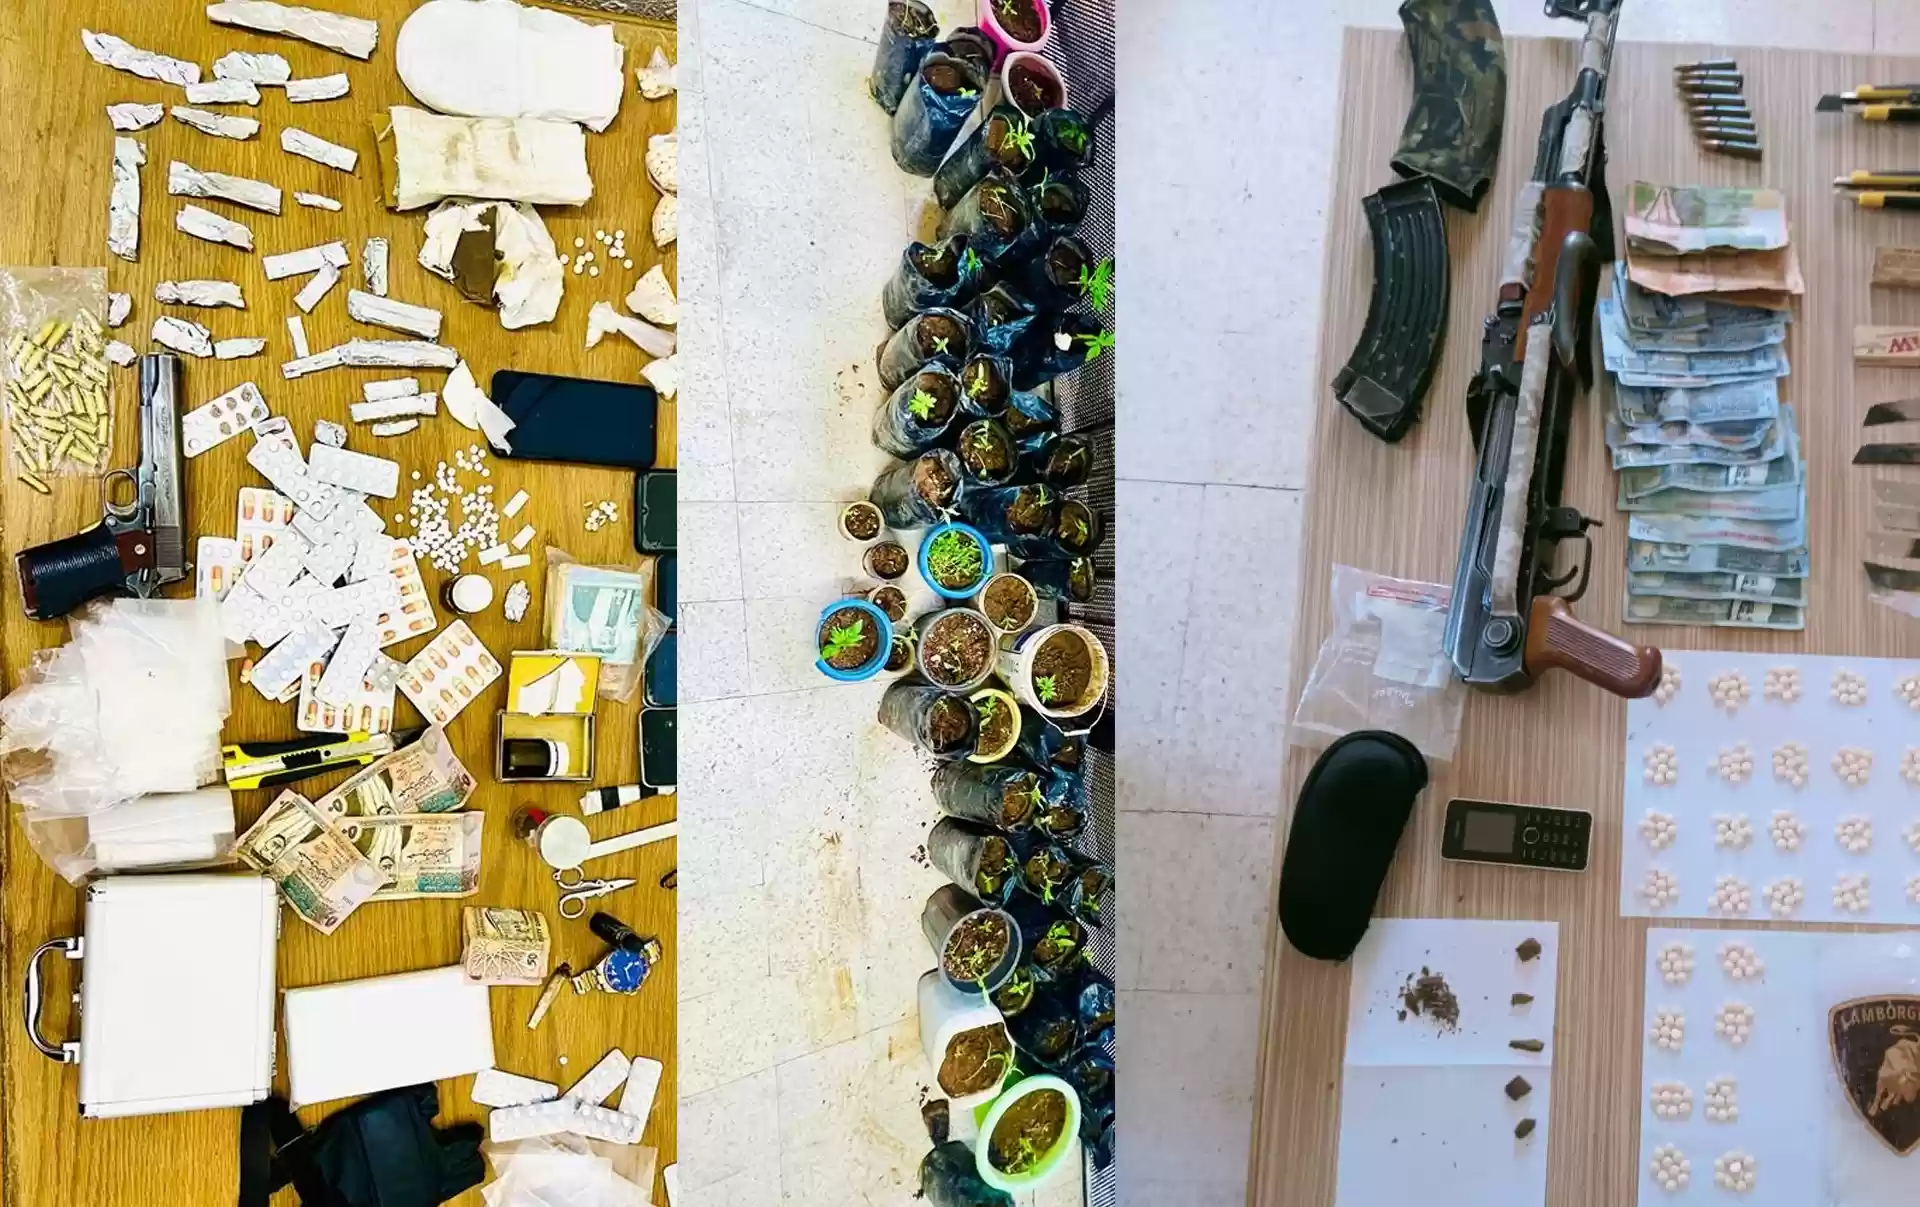 الأمن يضرب أوكار المخدرات في عجلون والبادية الجنوبية (صور)